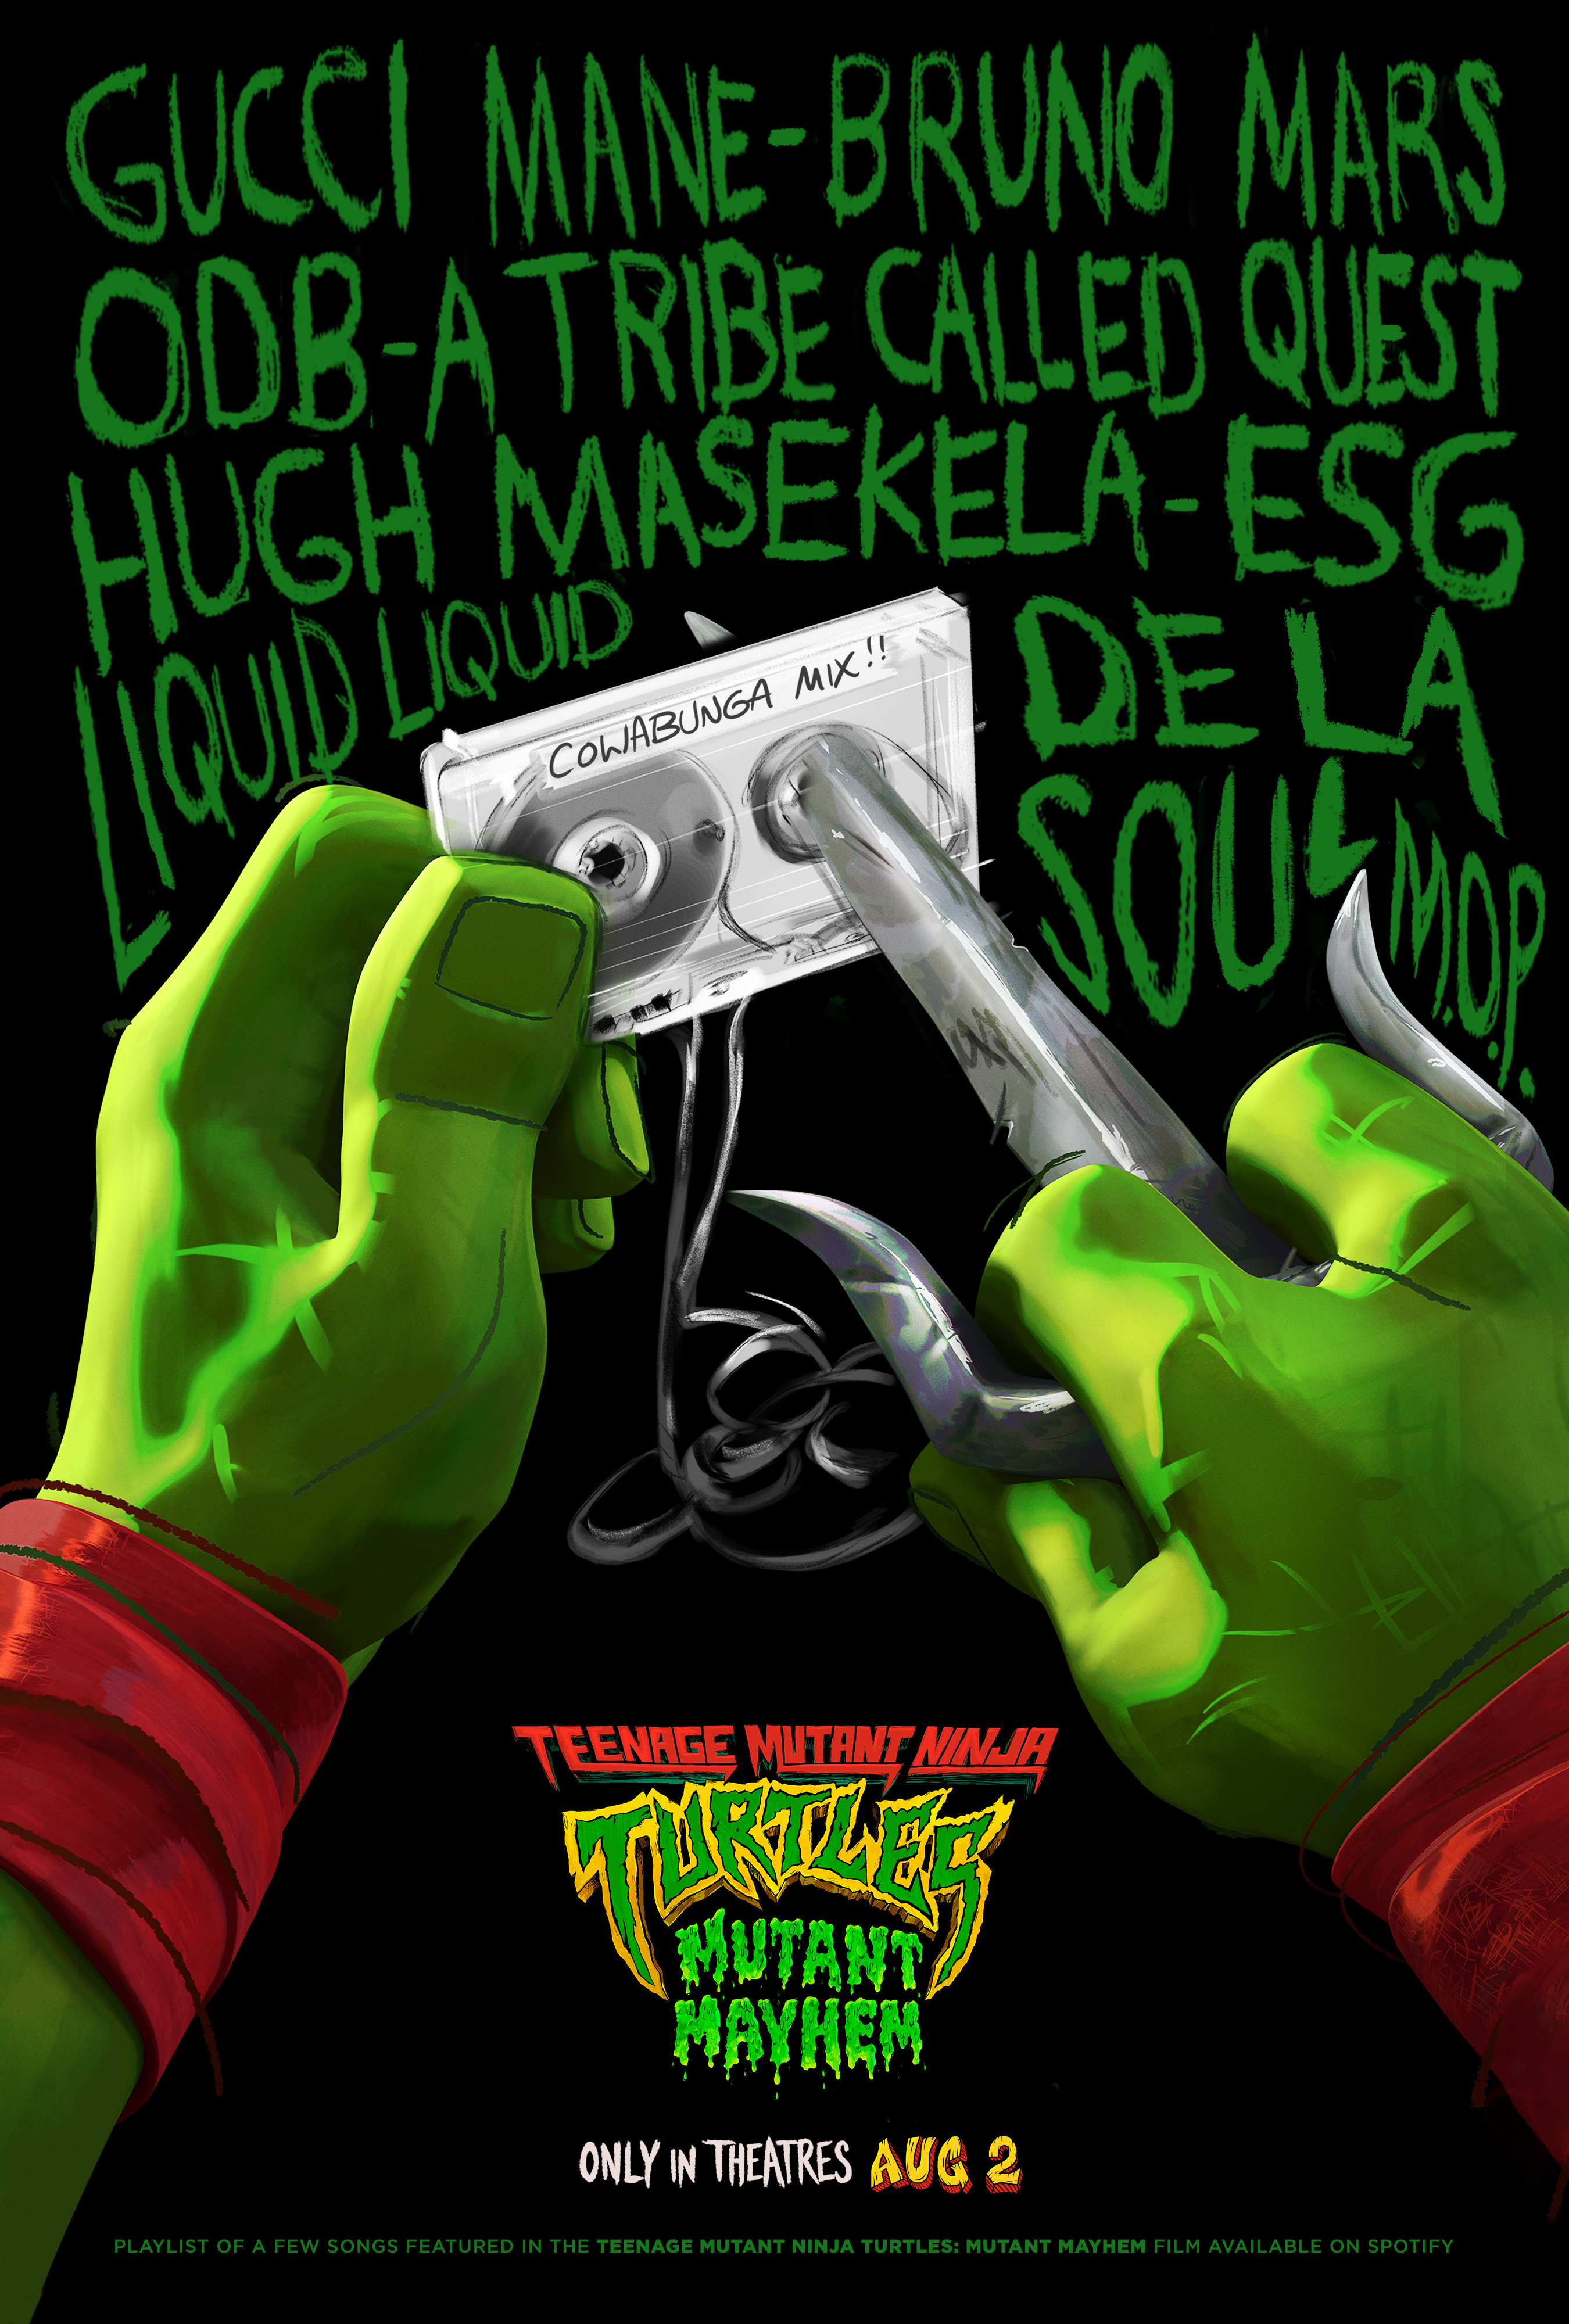 Teenage Mutant Ninja Turtles: Mutant Mayhem (Original Score)